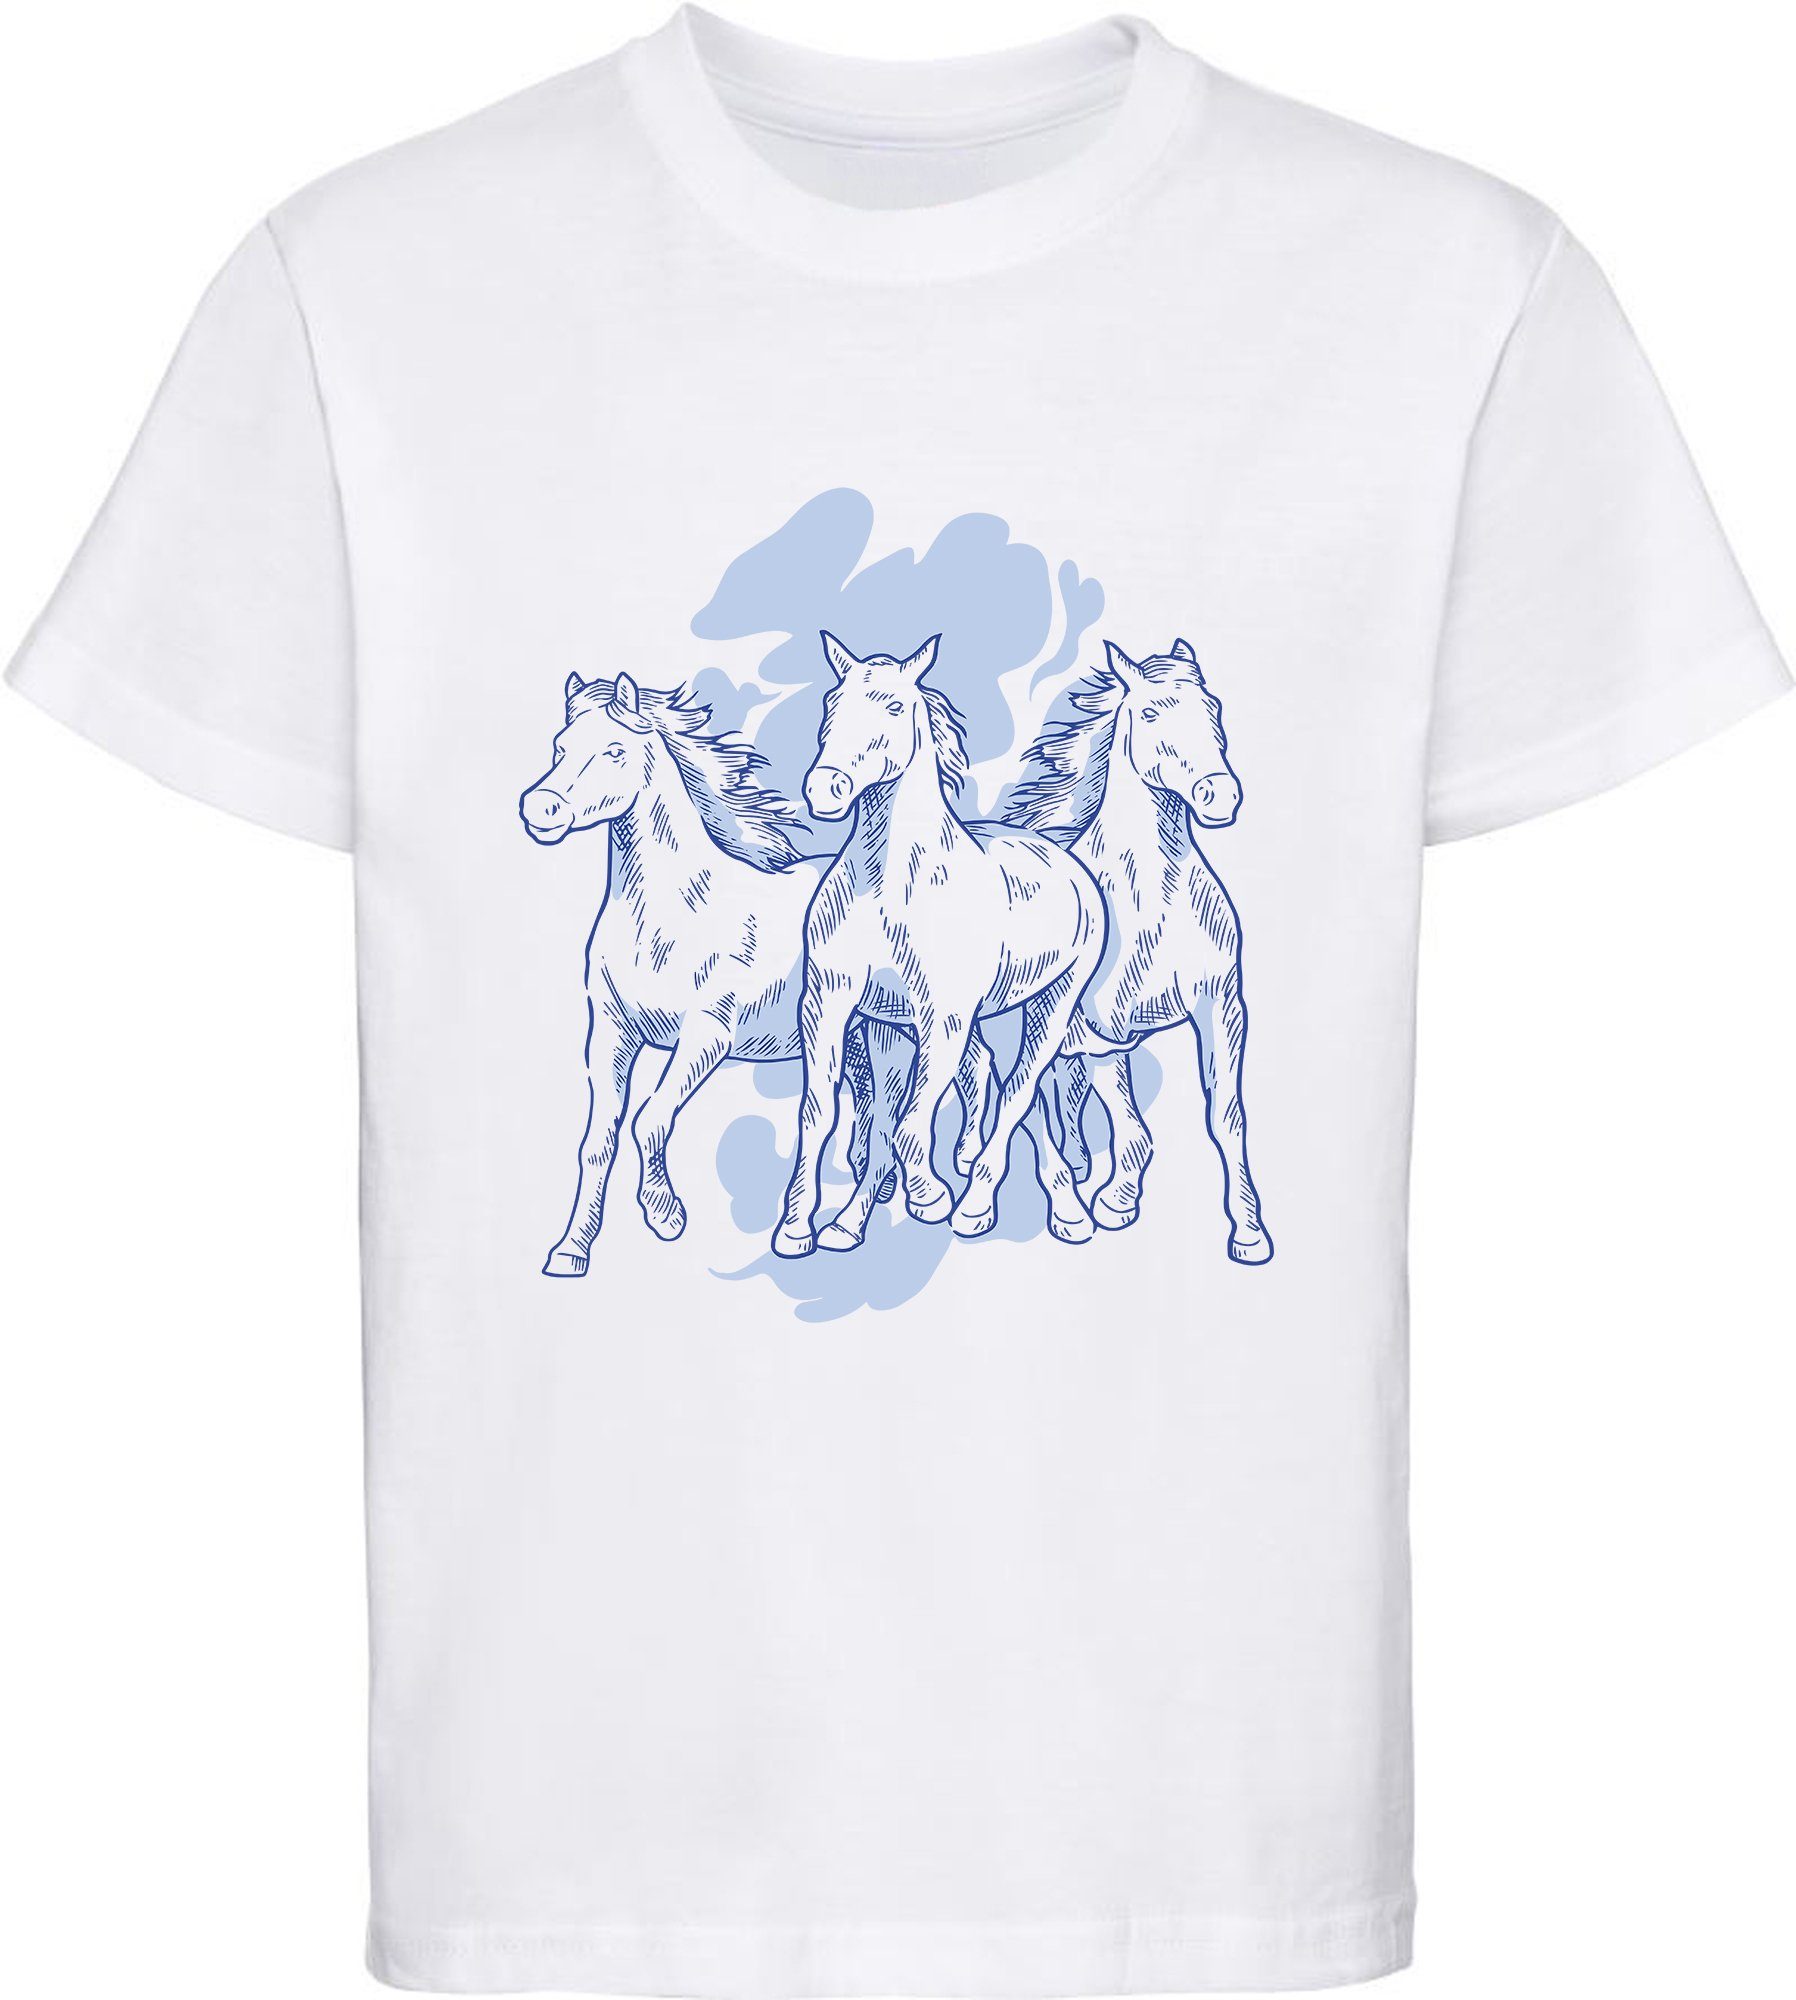 MyDesign24 Print-Shirt Aufdruck, Mädchen mit mit Baumwollshirt Pferden 3 weiss bedrucktes i141 T-Shirt